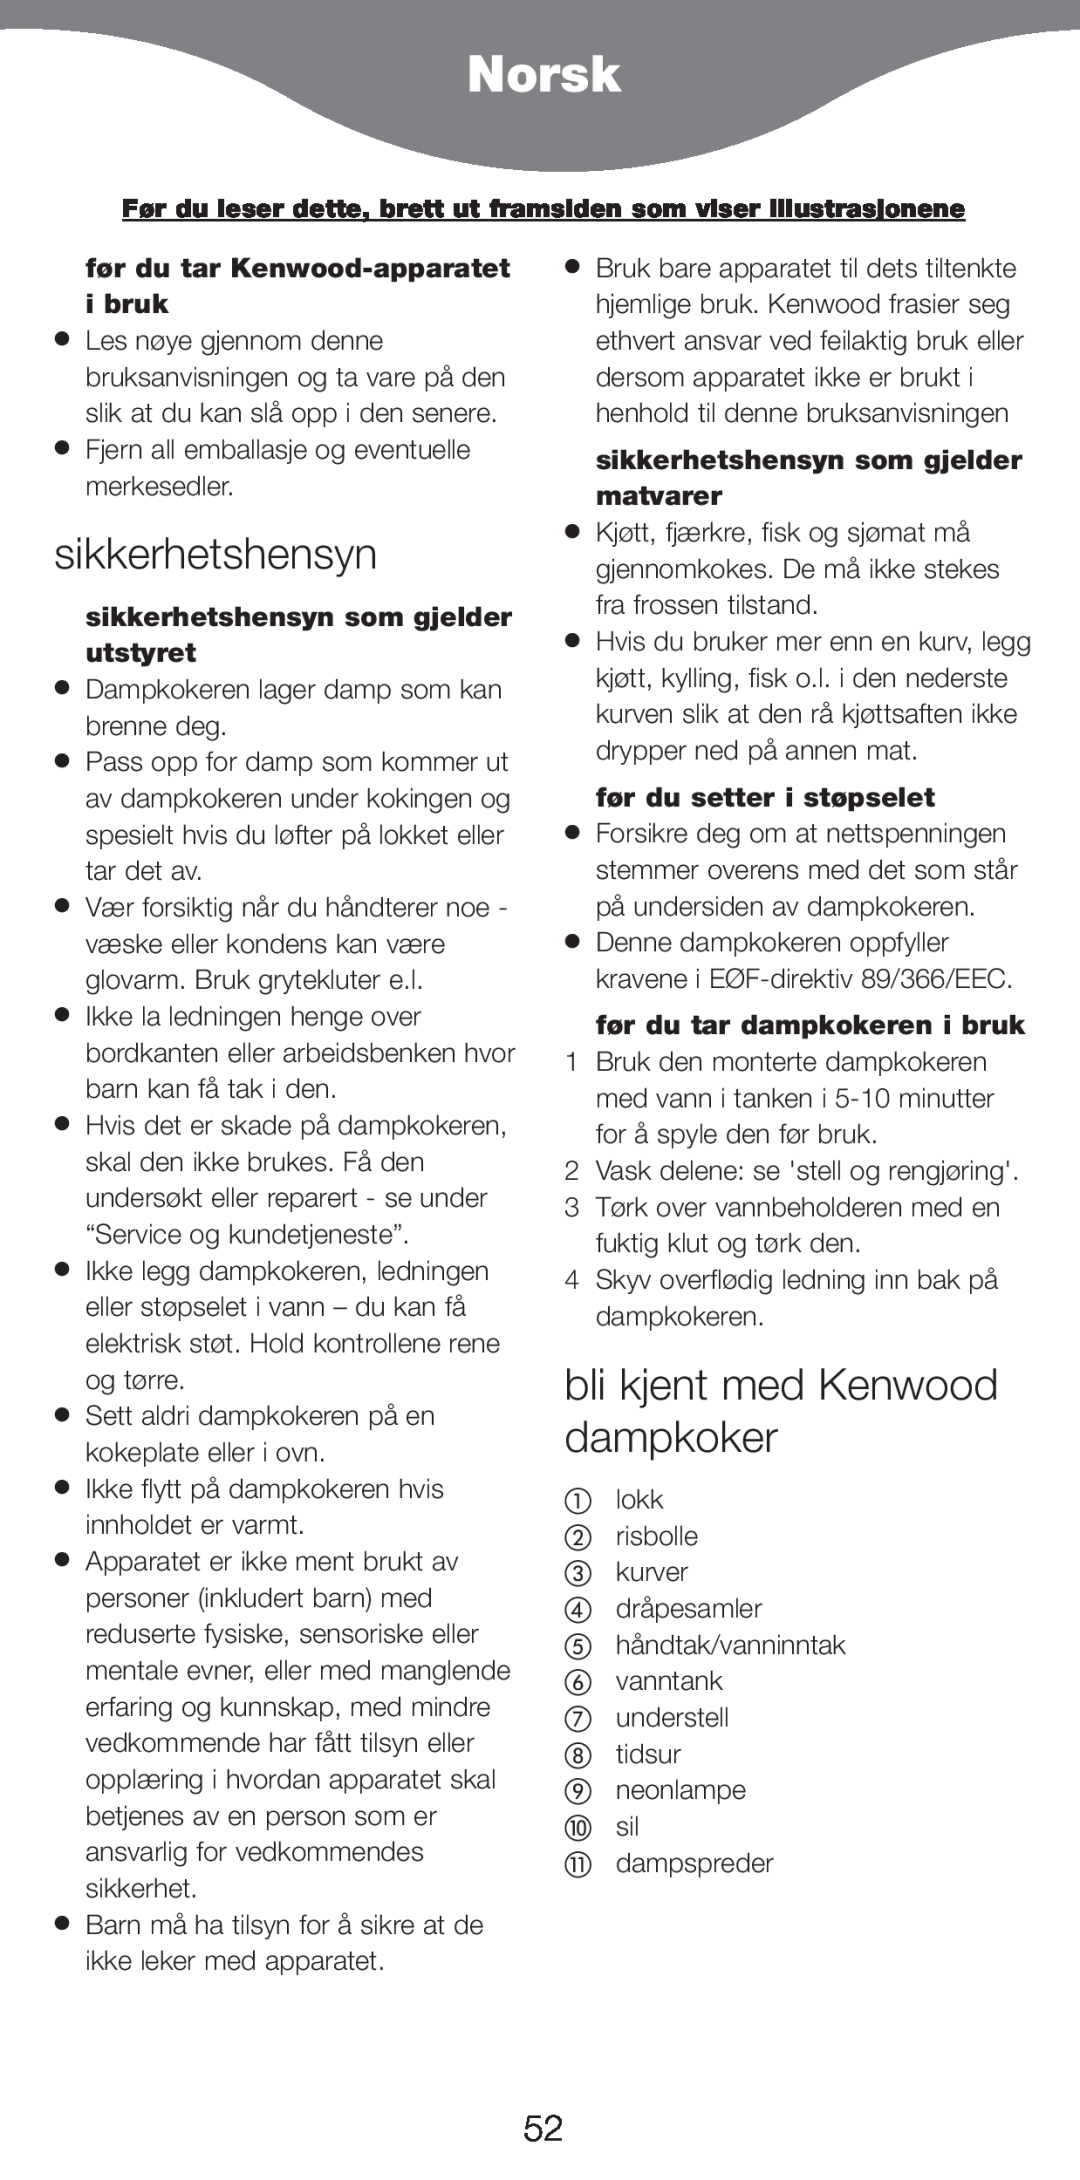 Kenwood FS370 manual Norsk, sikkerhetshensyn, bli kjent med Kenwood dampkoker, f¿r du tar Kenwood-apparatet i bruk 